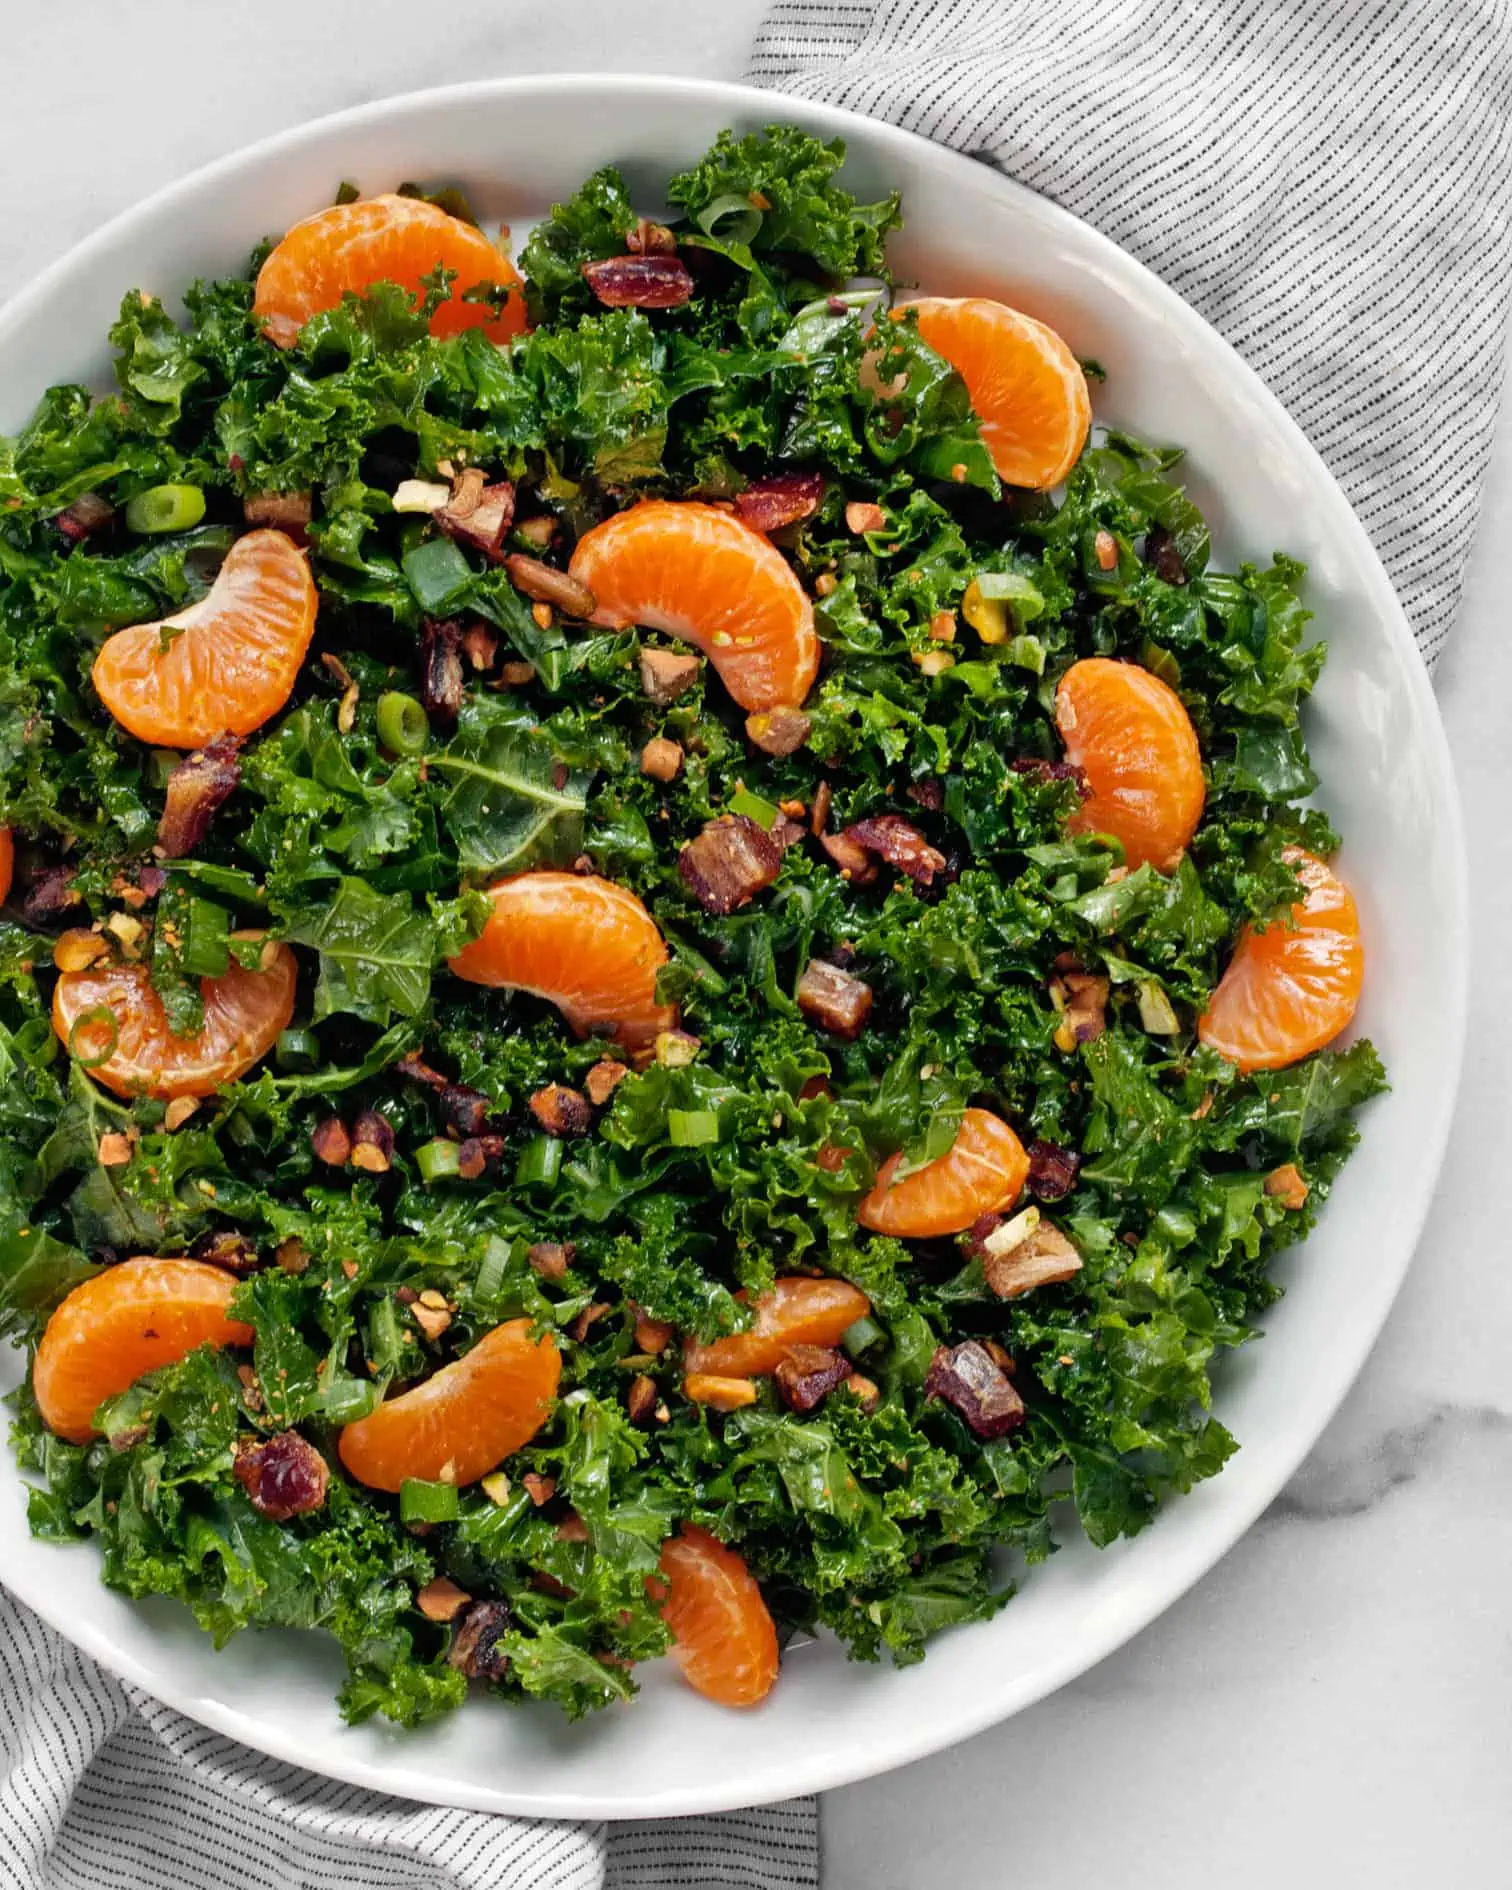 Mandarin orange kale salad on a plate